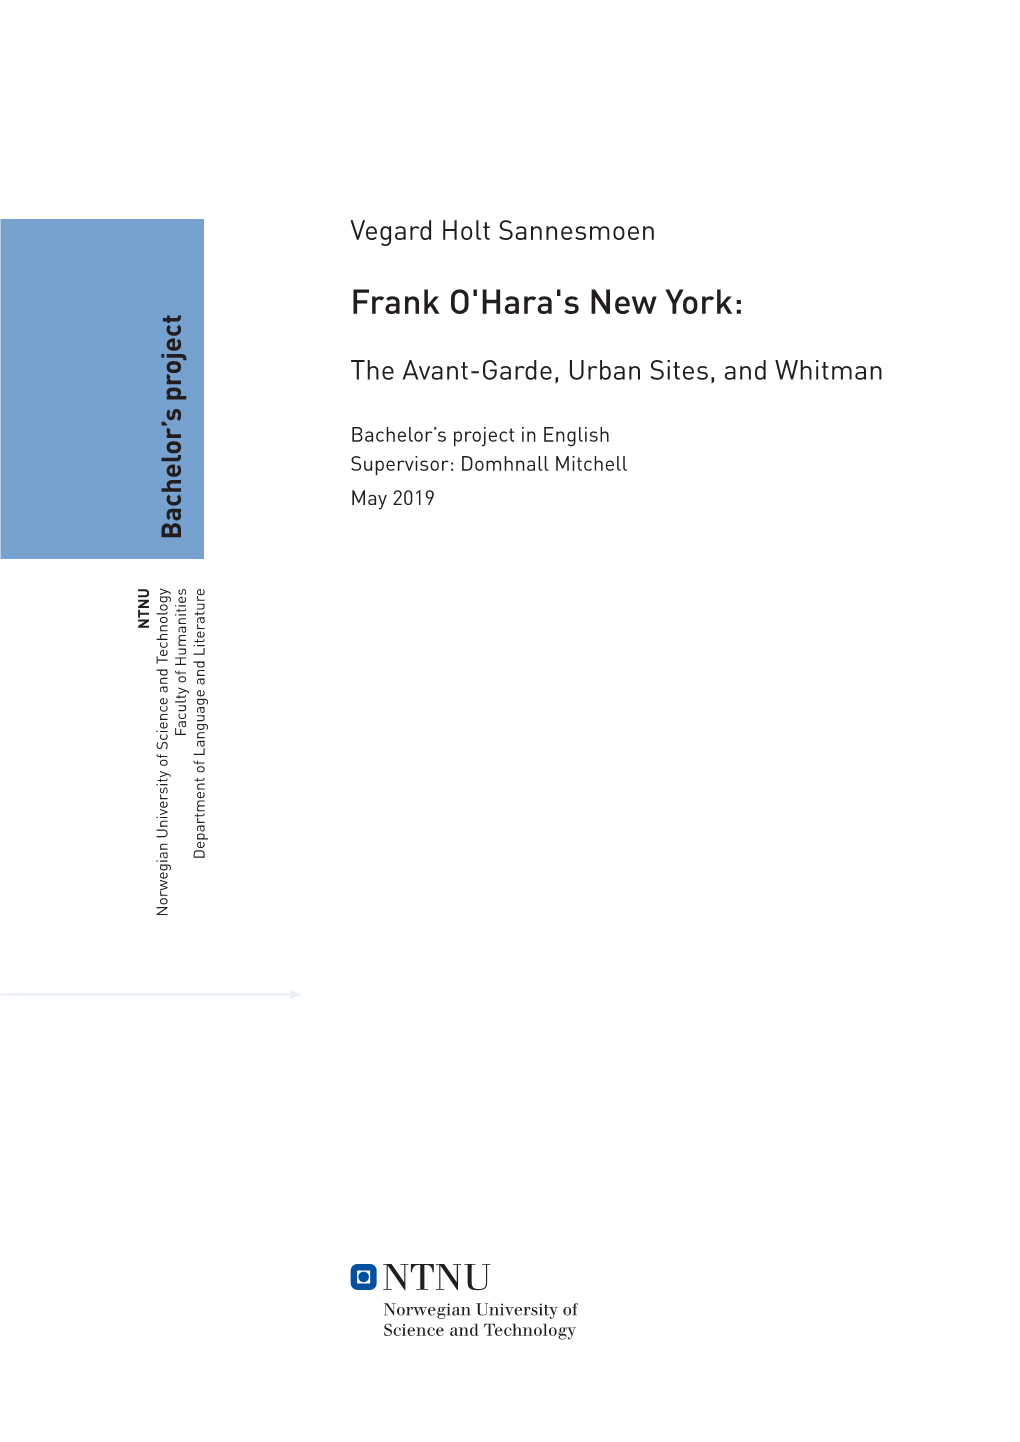 Frank O'hara's New York: Vegard Holtsannesmoen